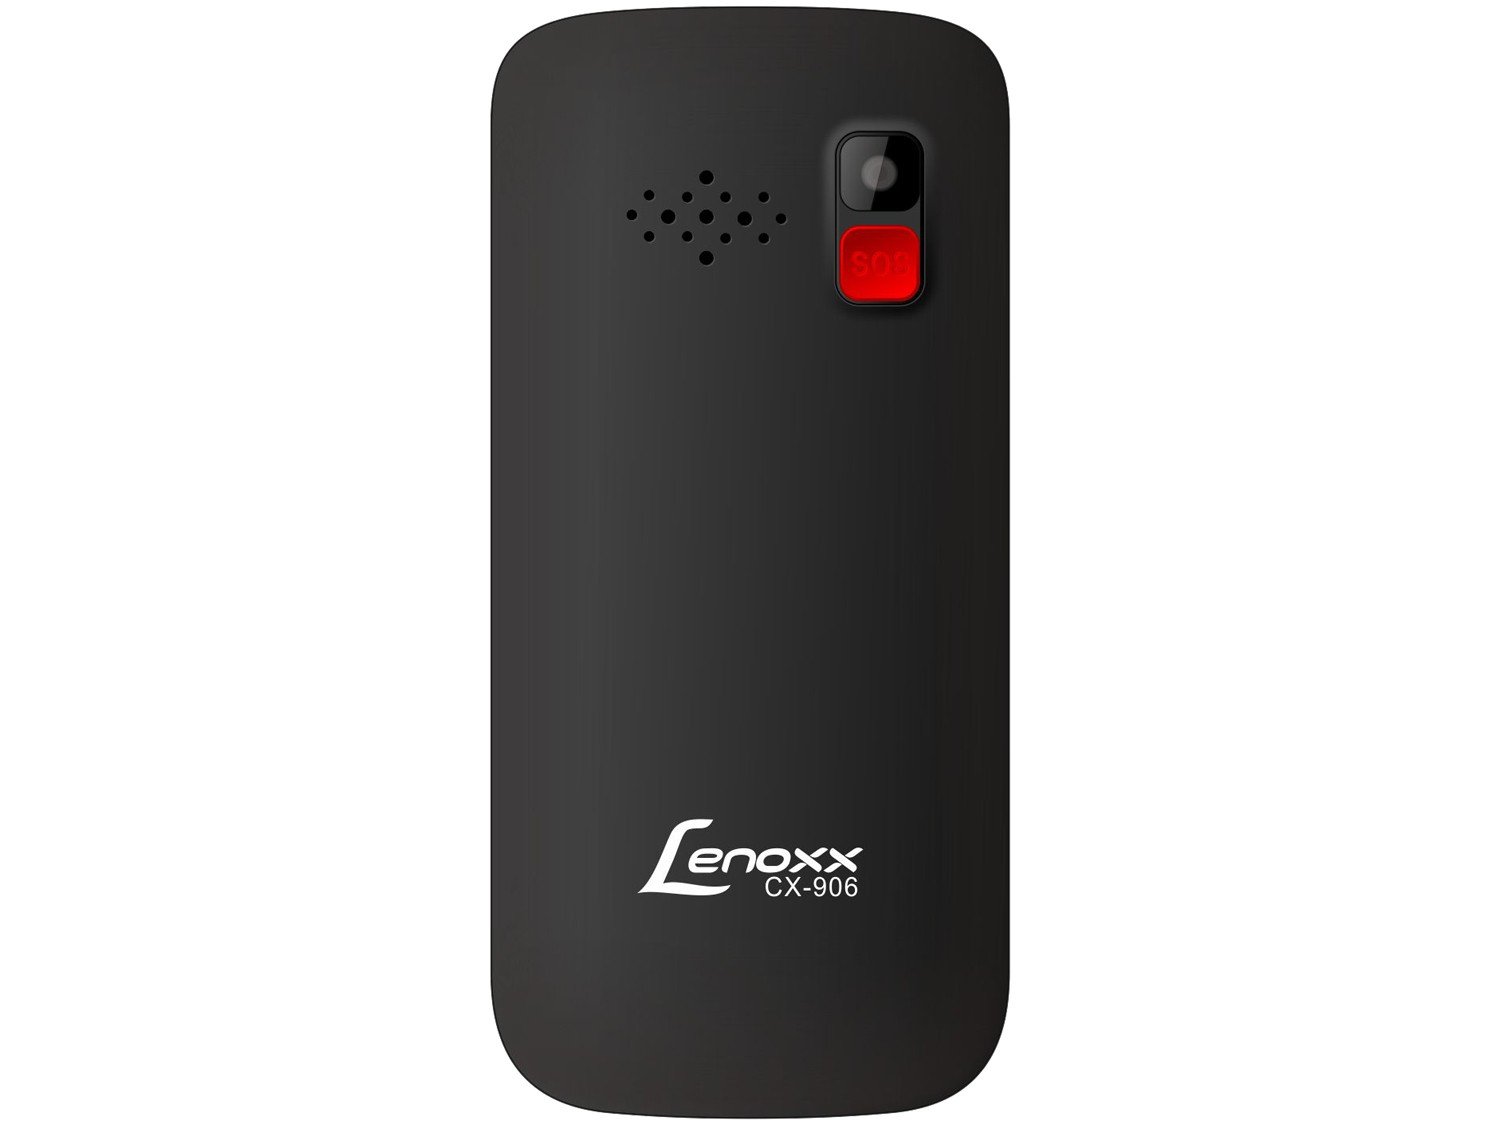 Celular Lenoxx CX 906 Preto com Tela 1.8”, Dual Chip, Câmera VGA, Bluetooth e Rádio FM - 4